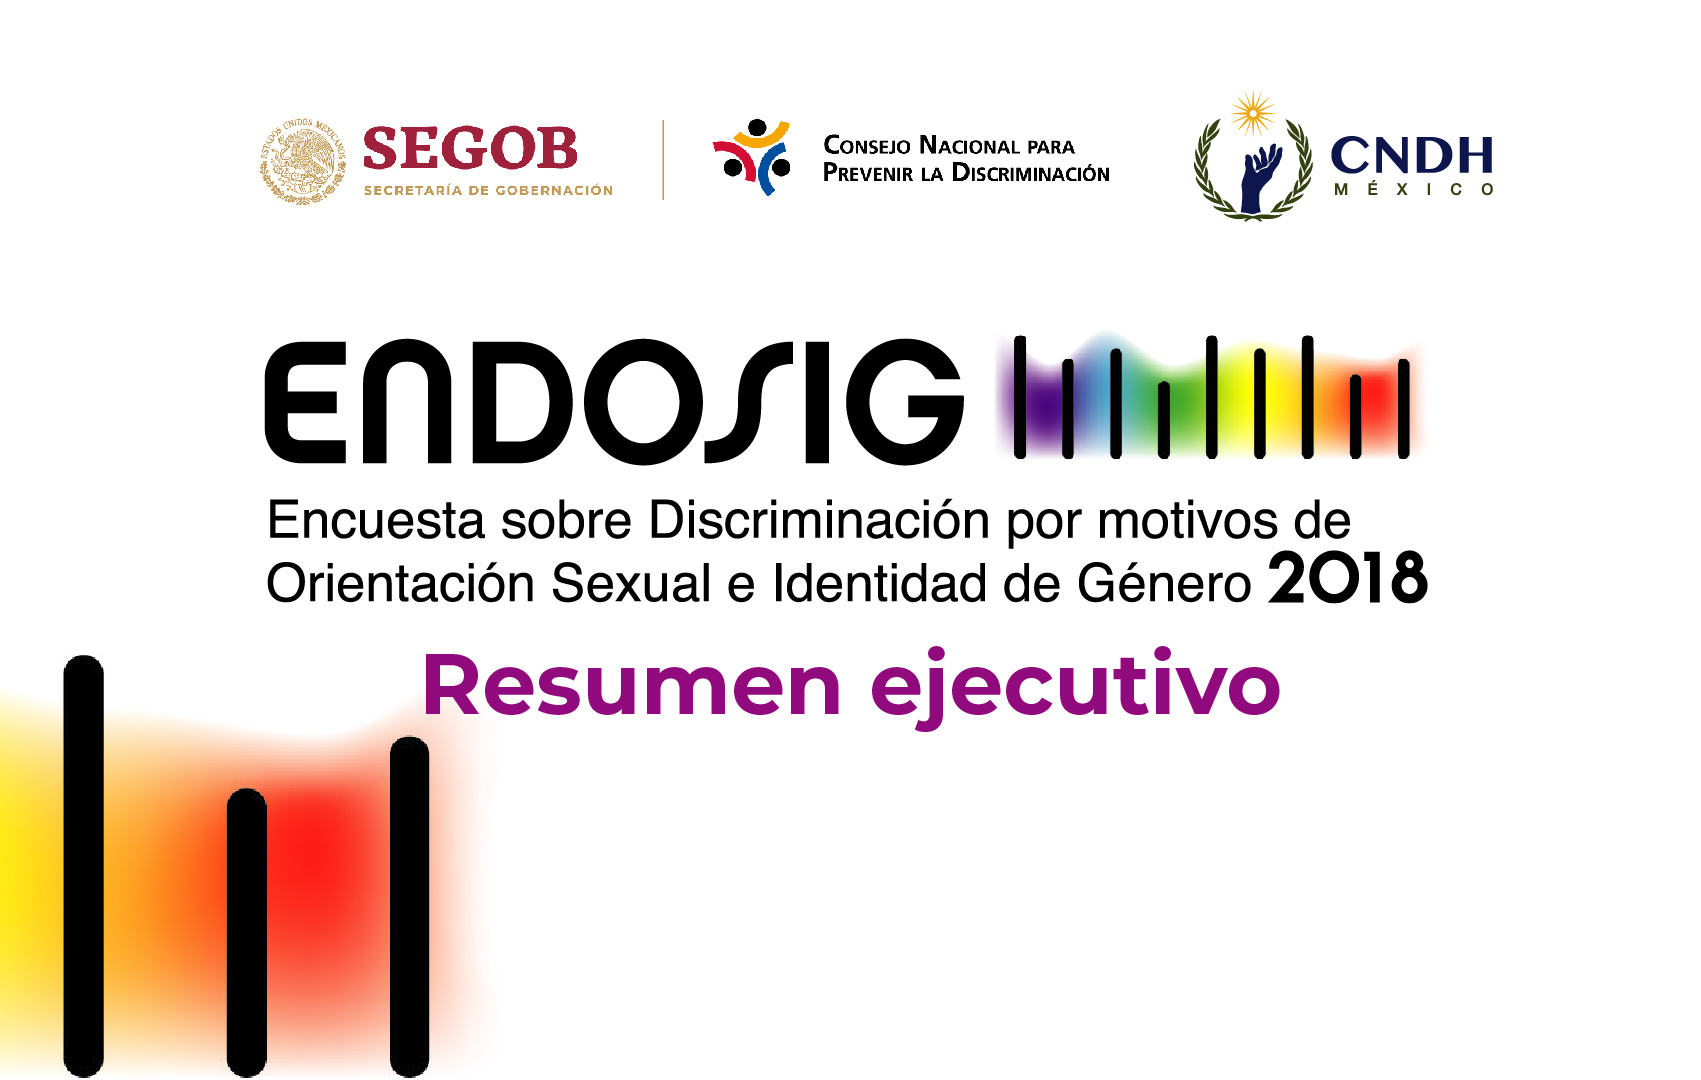 Banner sobre la Encuesta sobre Discriminación por motivos de Orientación Sexual e Identidad de Género 2018. 